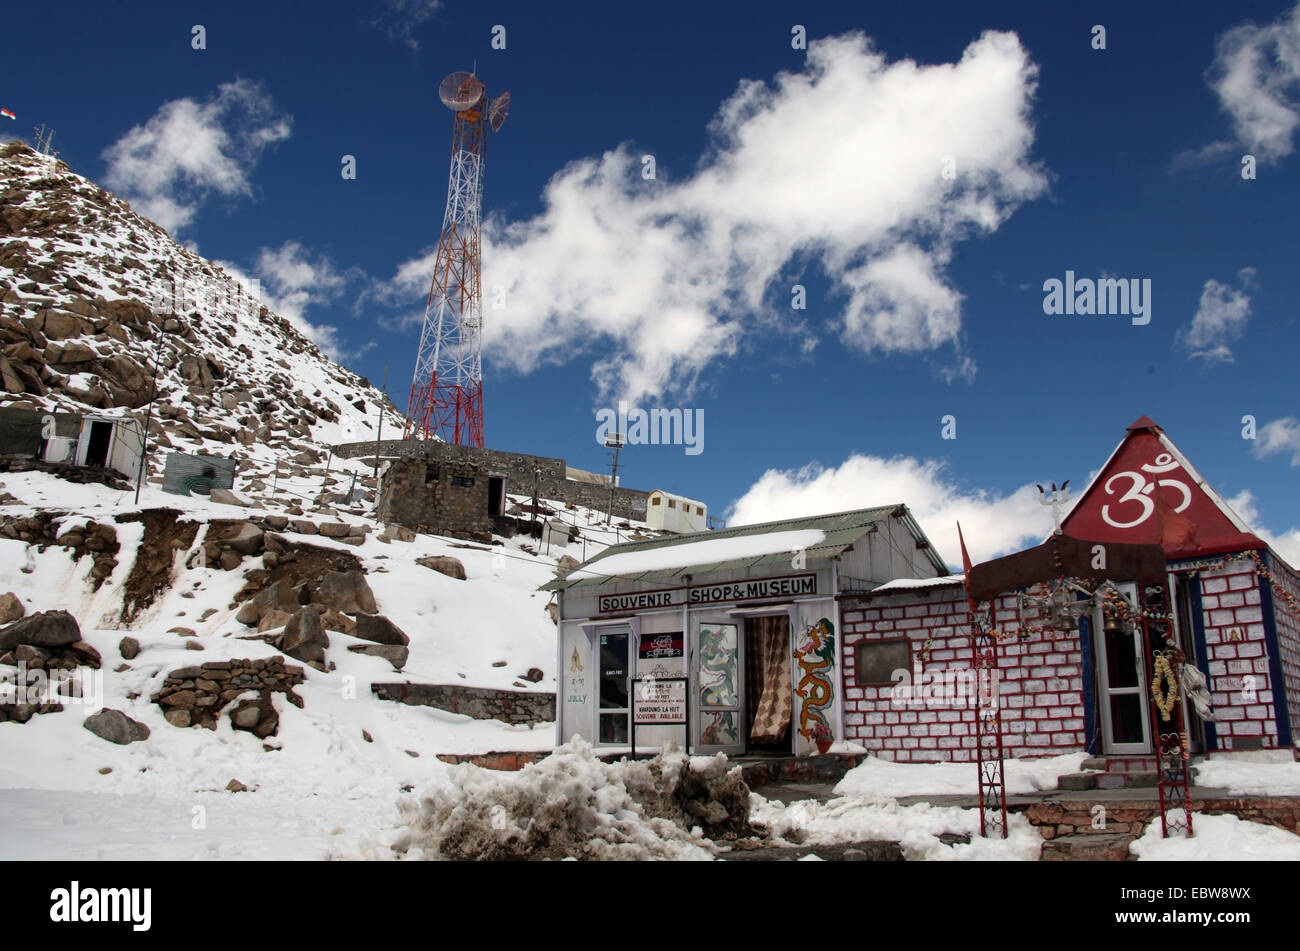 Souvenir Shop and Museum at Khardung La in Ladakh Stock Photo